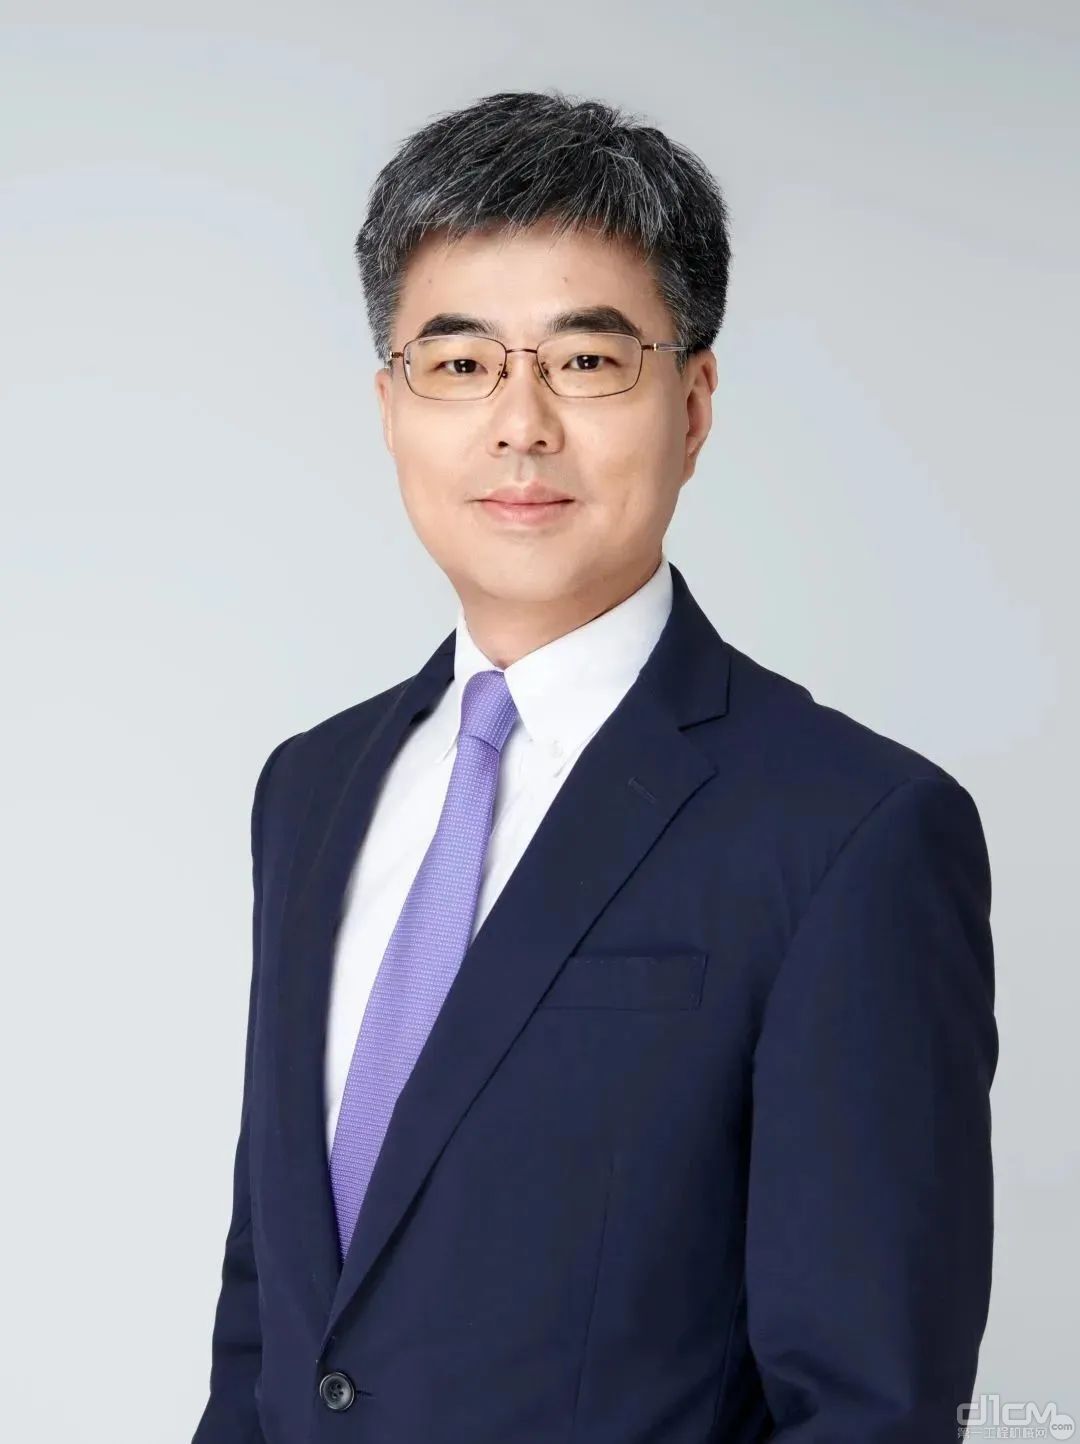 埃克森美孚中国润滑油业务董事总经理岳春阳